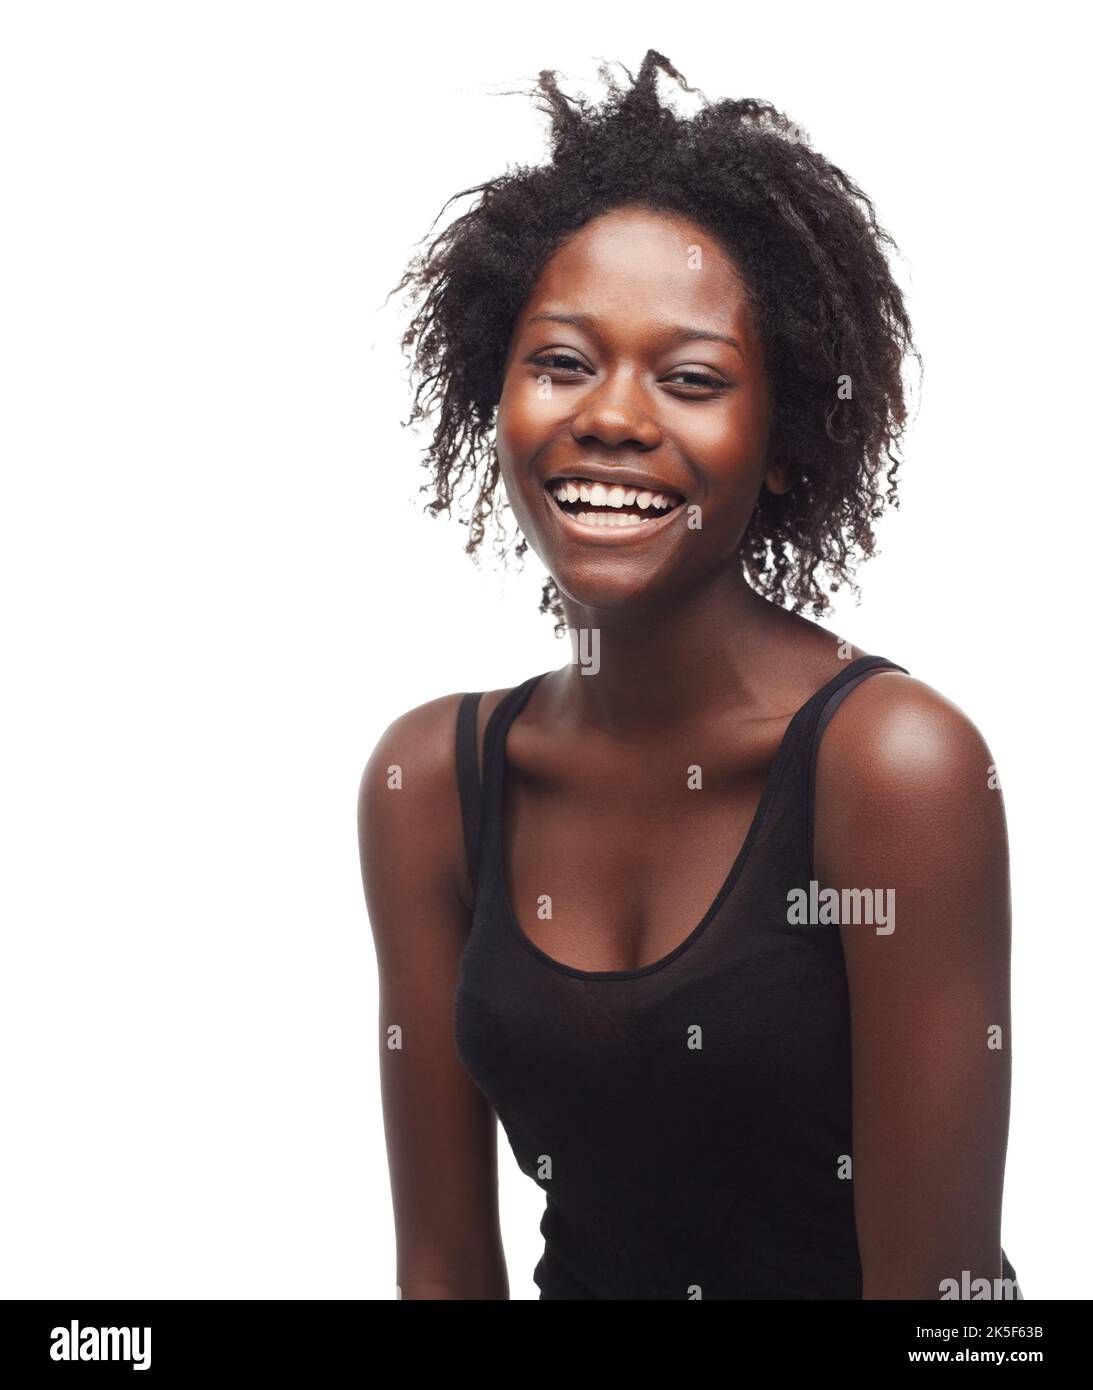 Leben mit Positivität. Porträt einer schönen jungen Frau, die Positivität auf weißem Hintergrund ausdrückt. Stockfoto